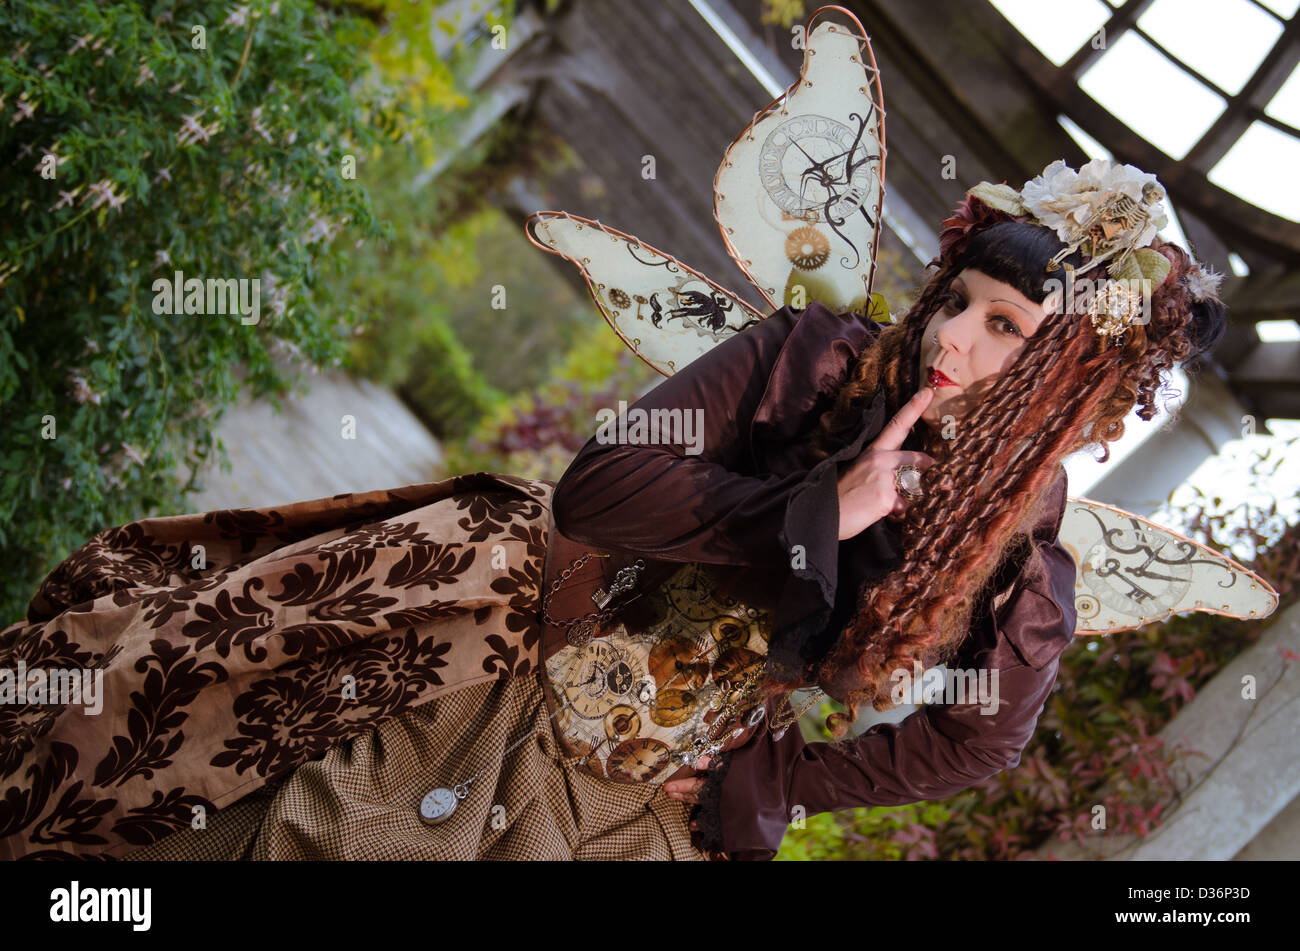 Caucasian woman wearing brown vêtements steampunk et fairy wings Banque D'Images